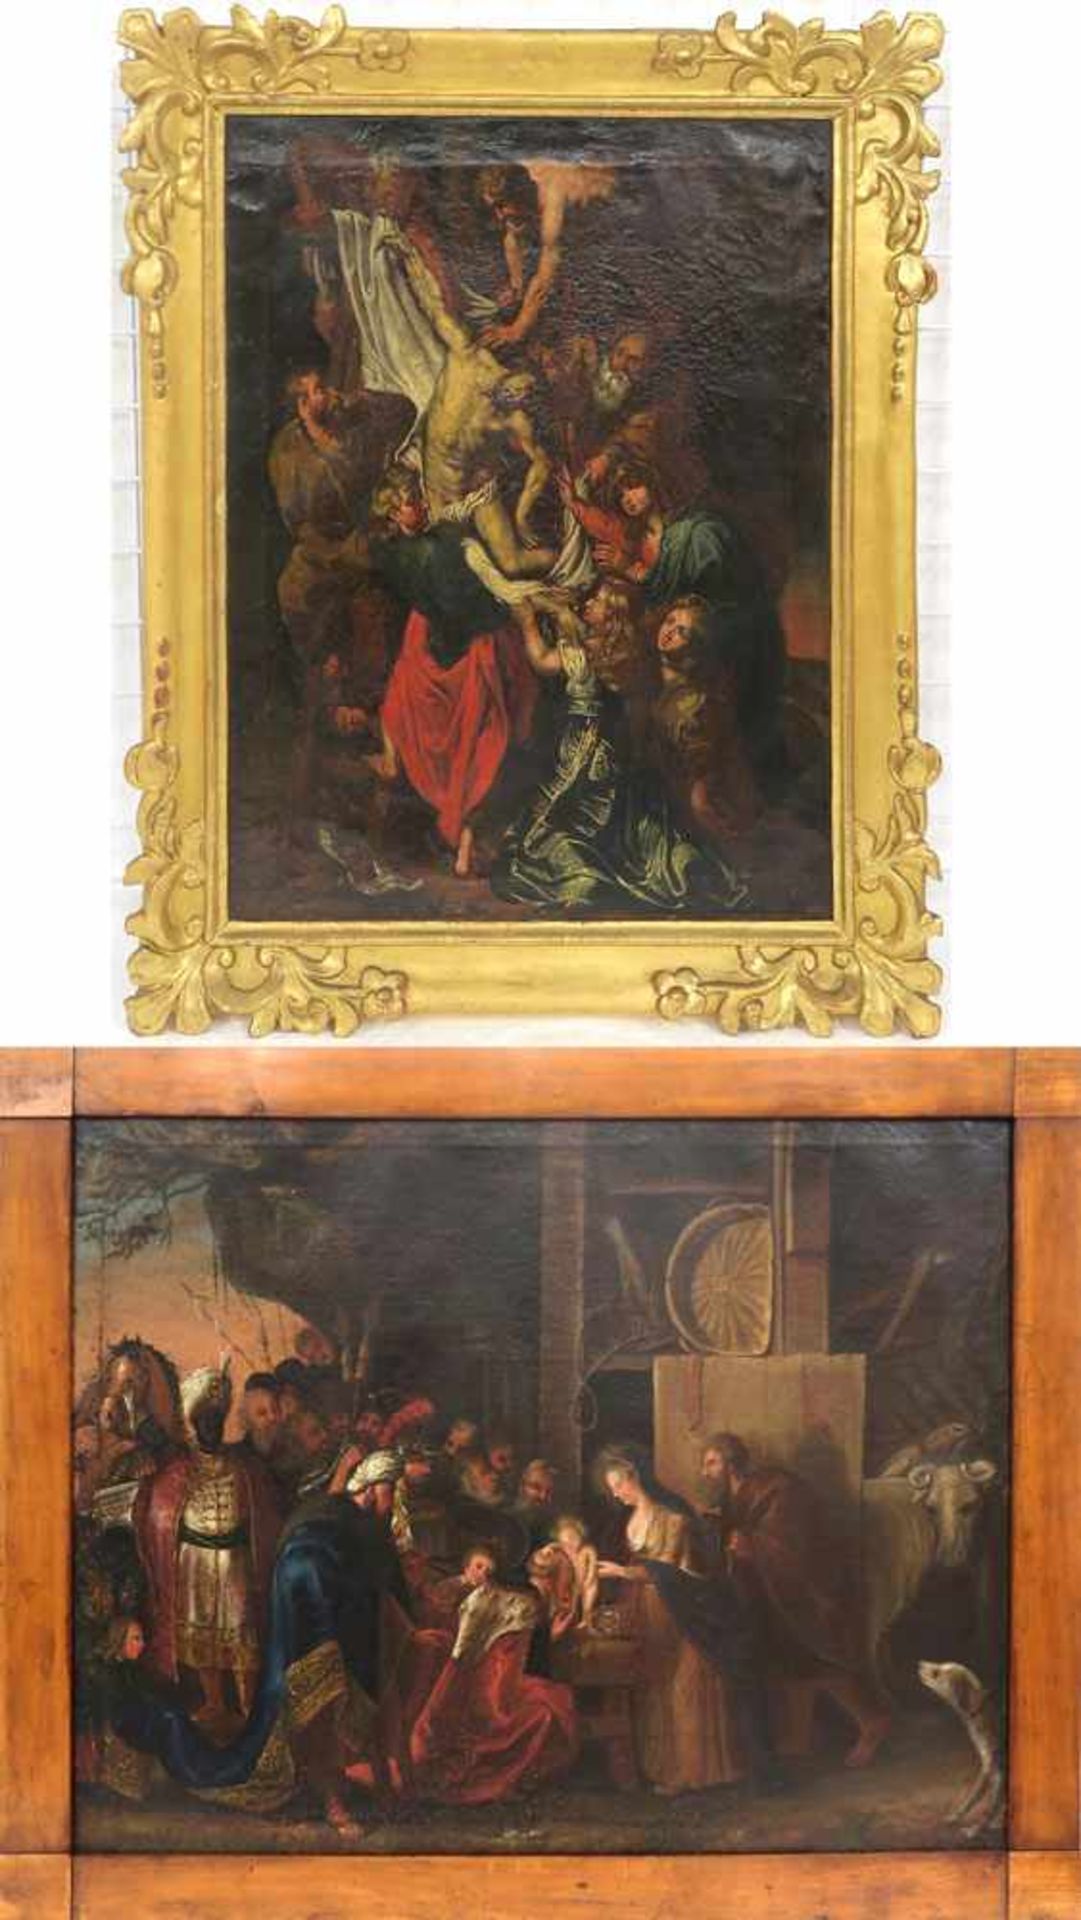 Kopie nach Peter Paul RubensKreuzabnahme / Anbetung der Heiligen Drei KönigeÖl/Lwd. 53 x 42 cm